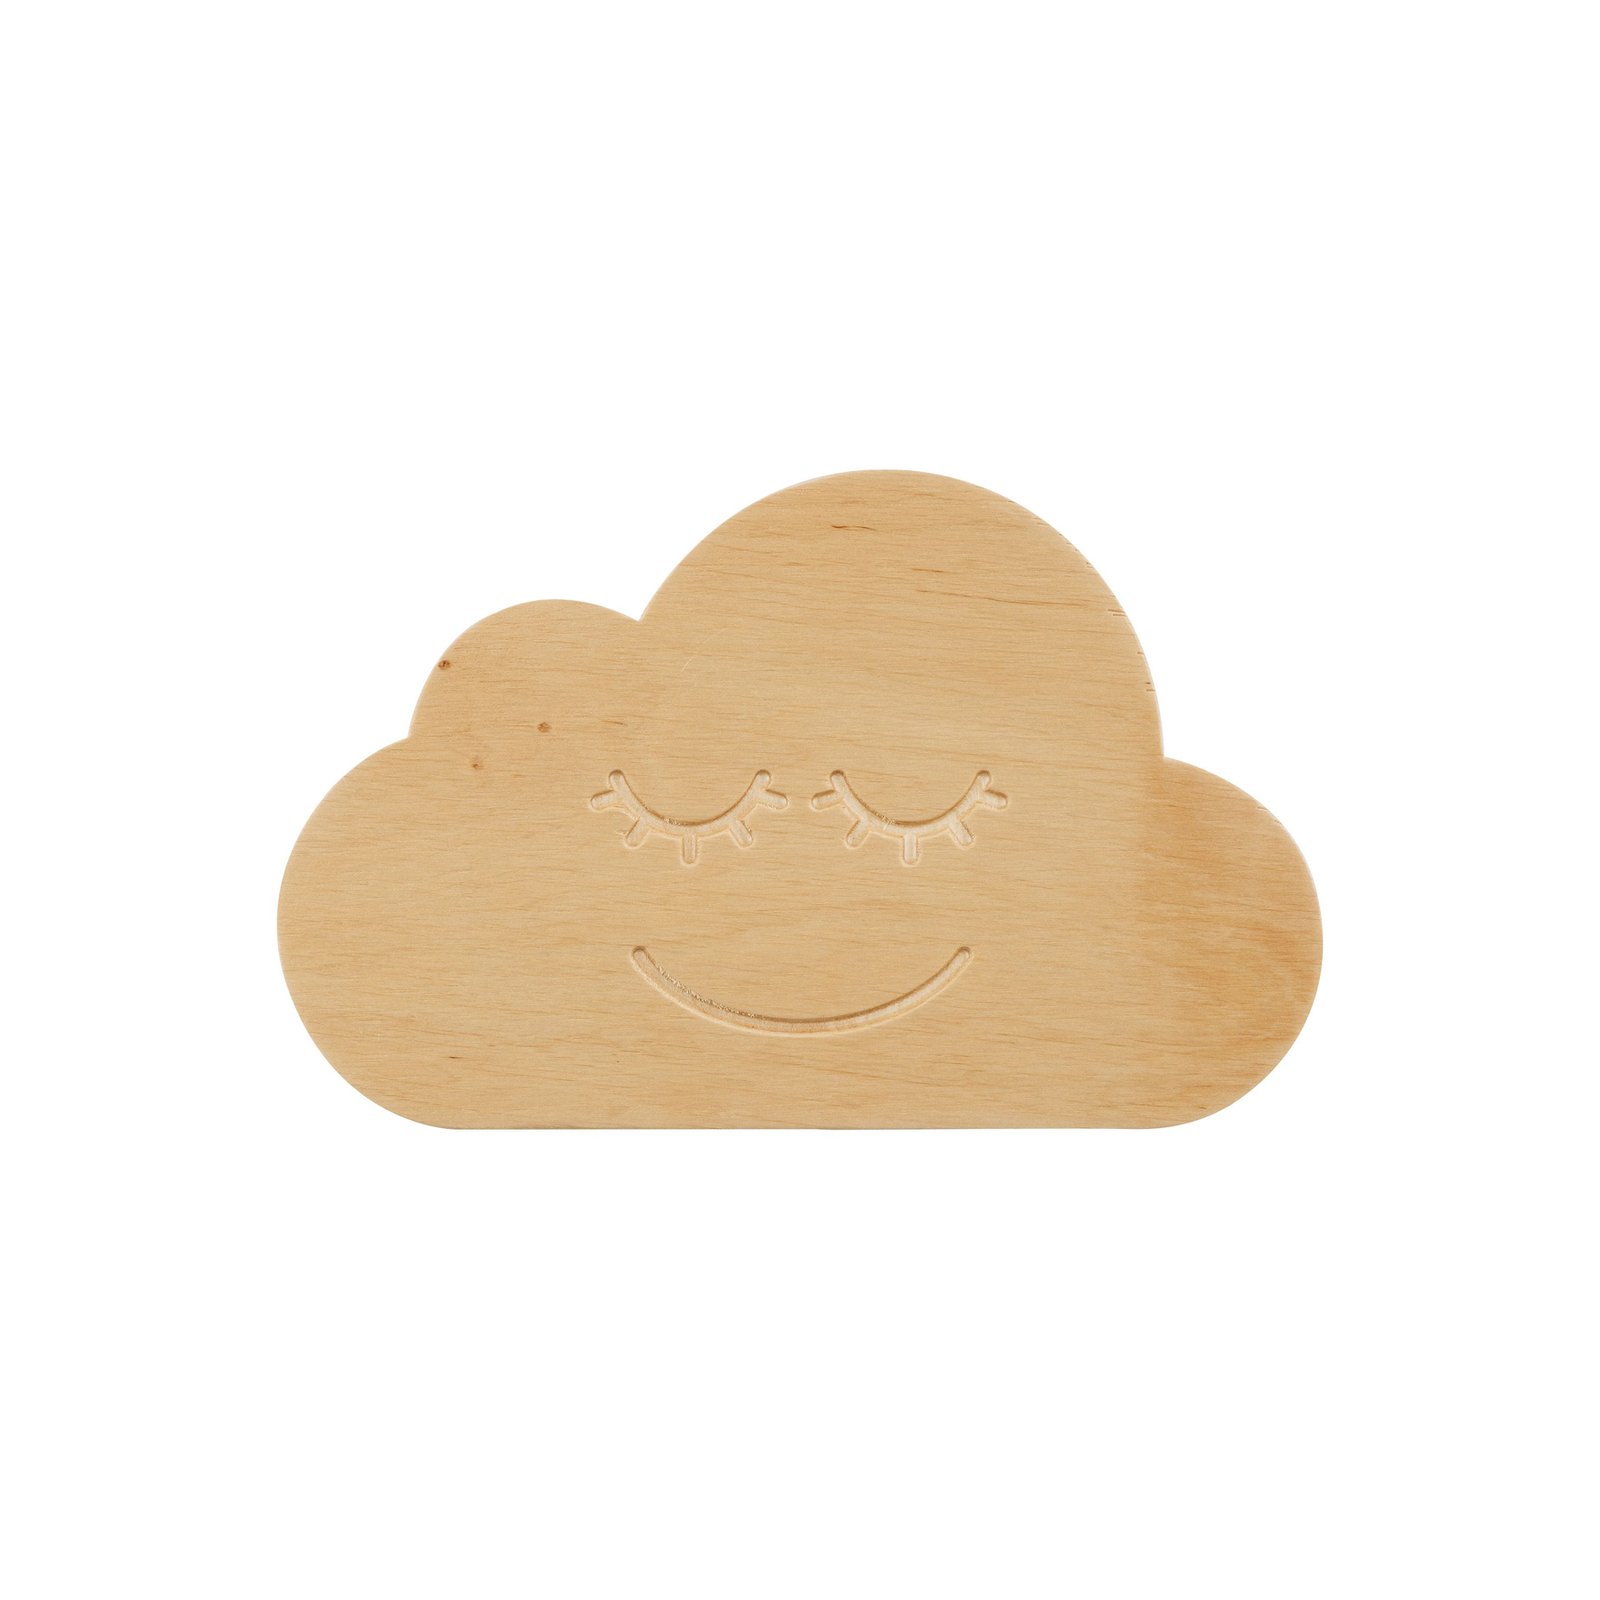 Kinkiet Cloud, wykonany z drewna, z wtyczką i przełącznikiem